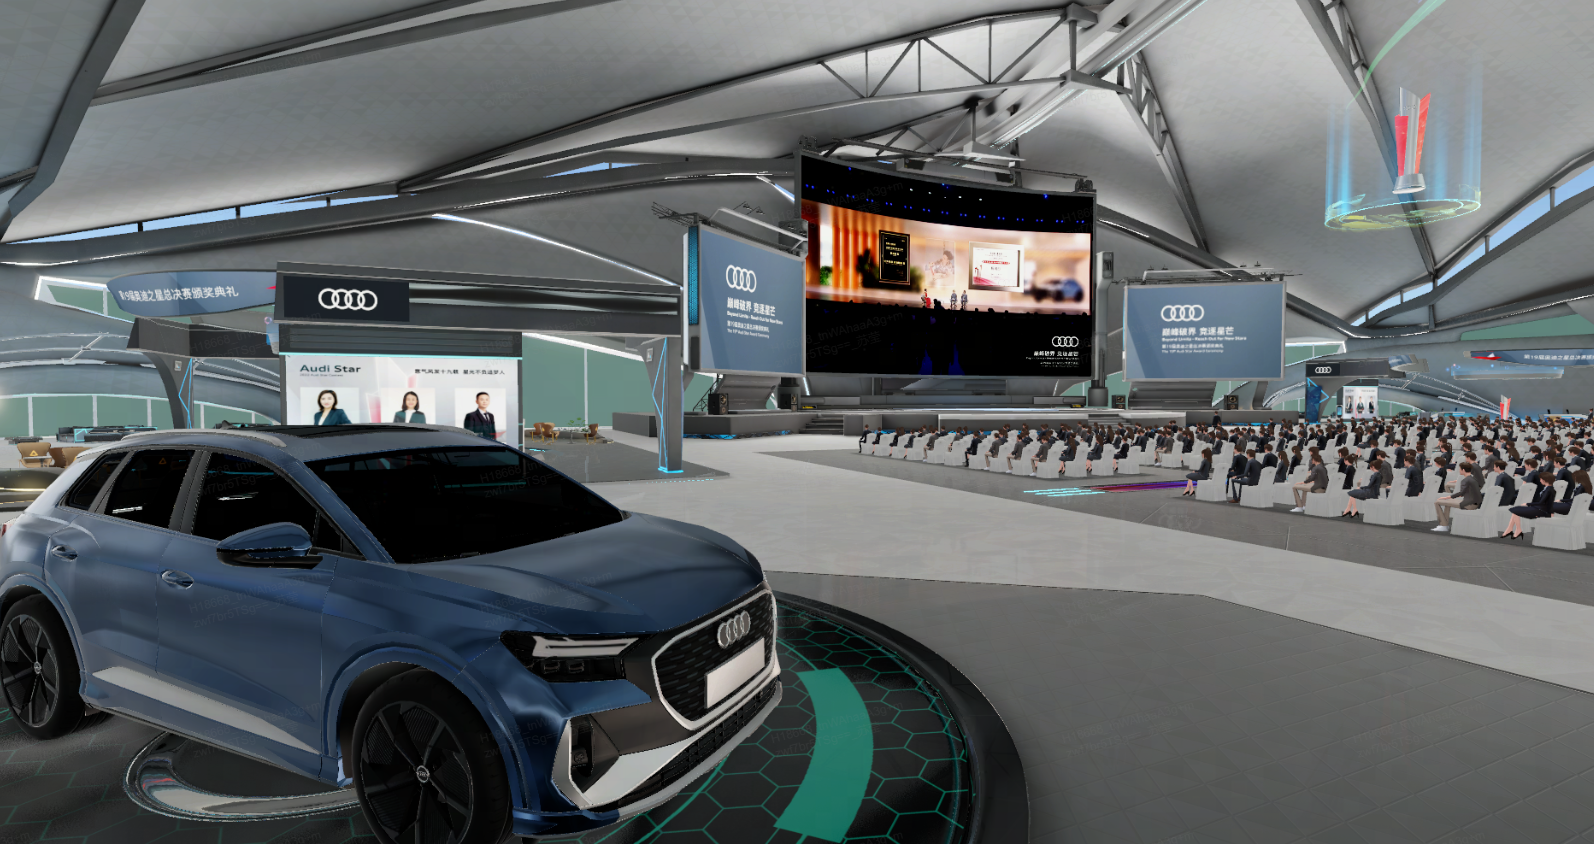 这是一张室内活动场景图，展示了奥迪汽车、观众席和大屏幕，场地布置现代，可能是某种发布会或展览会。